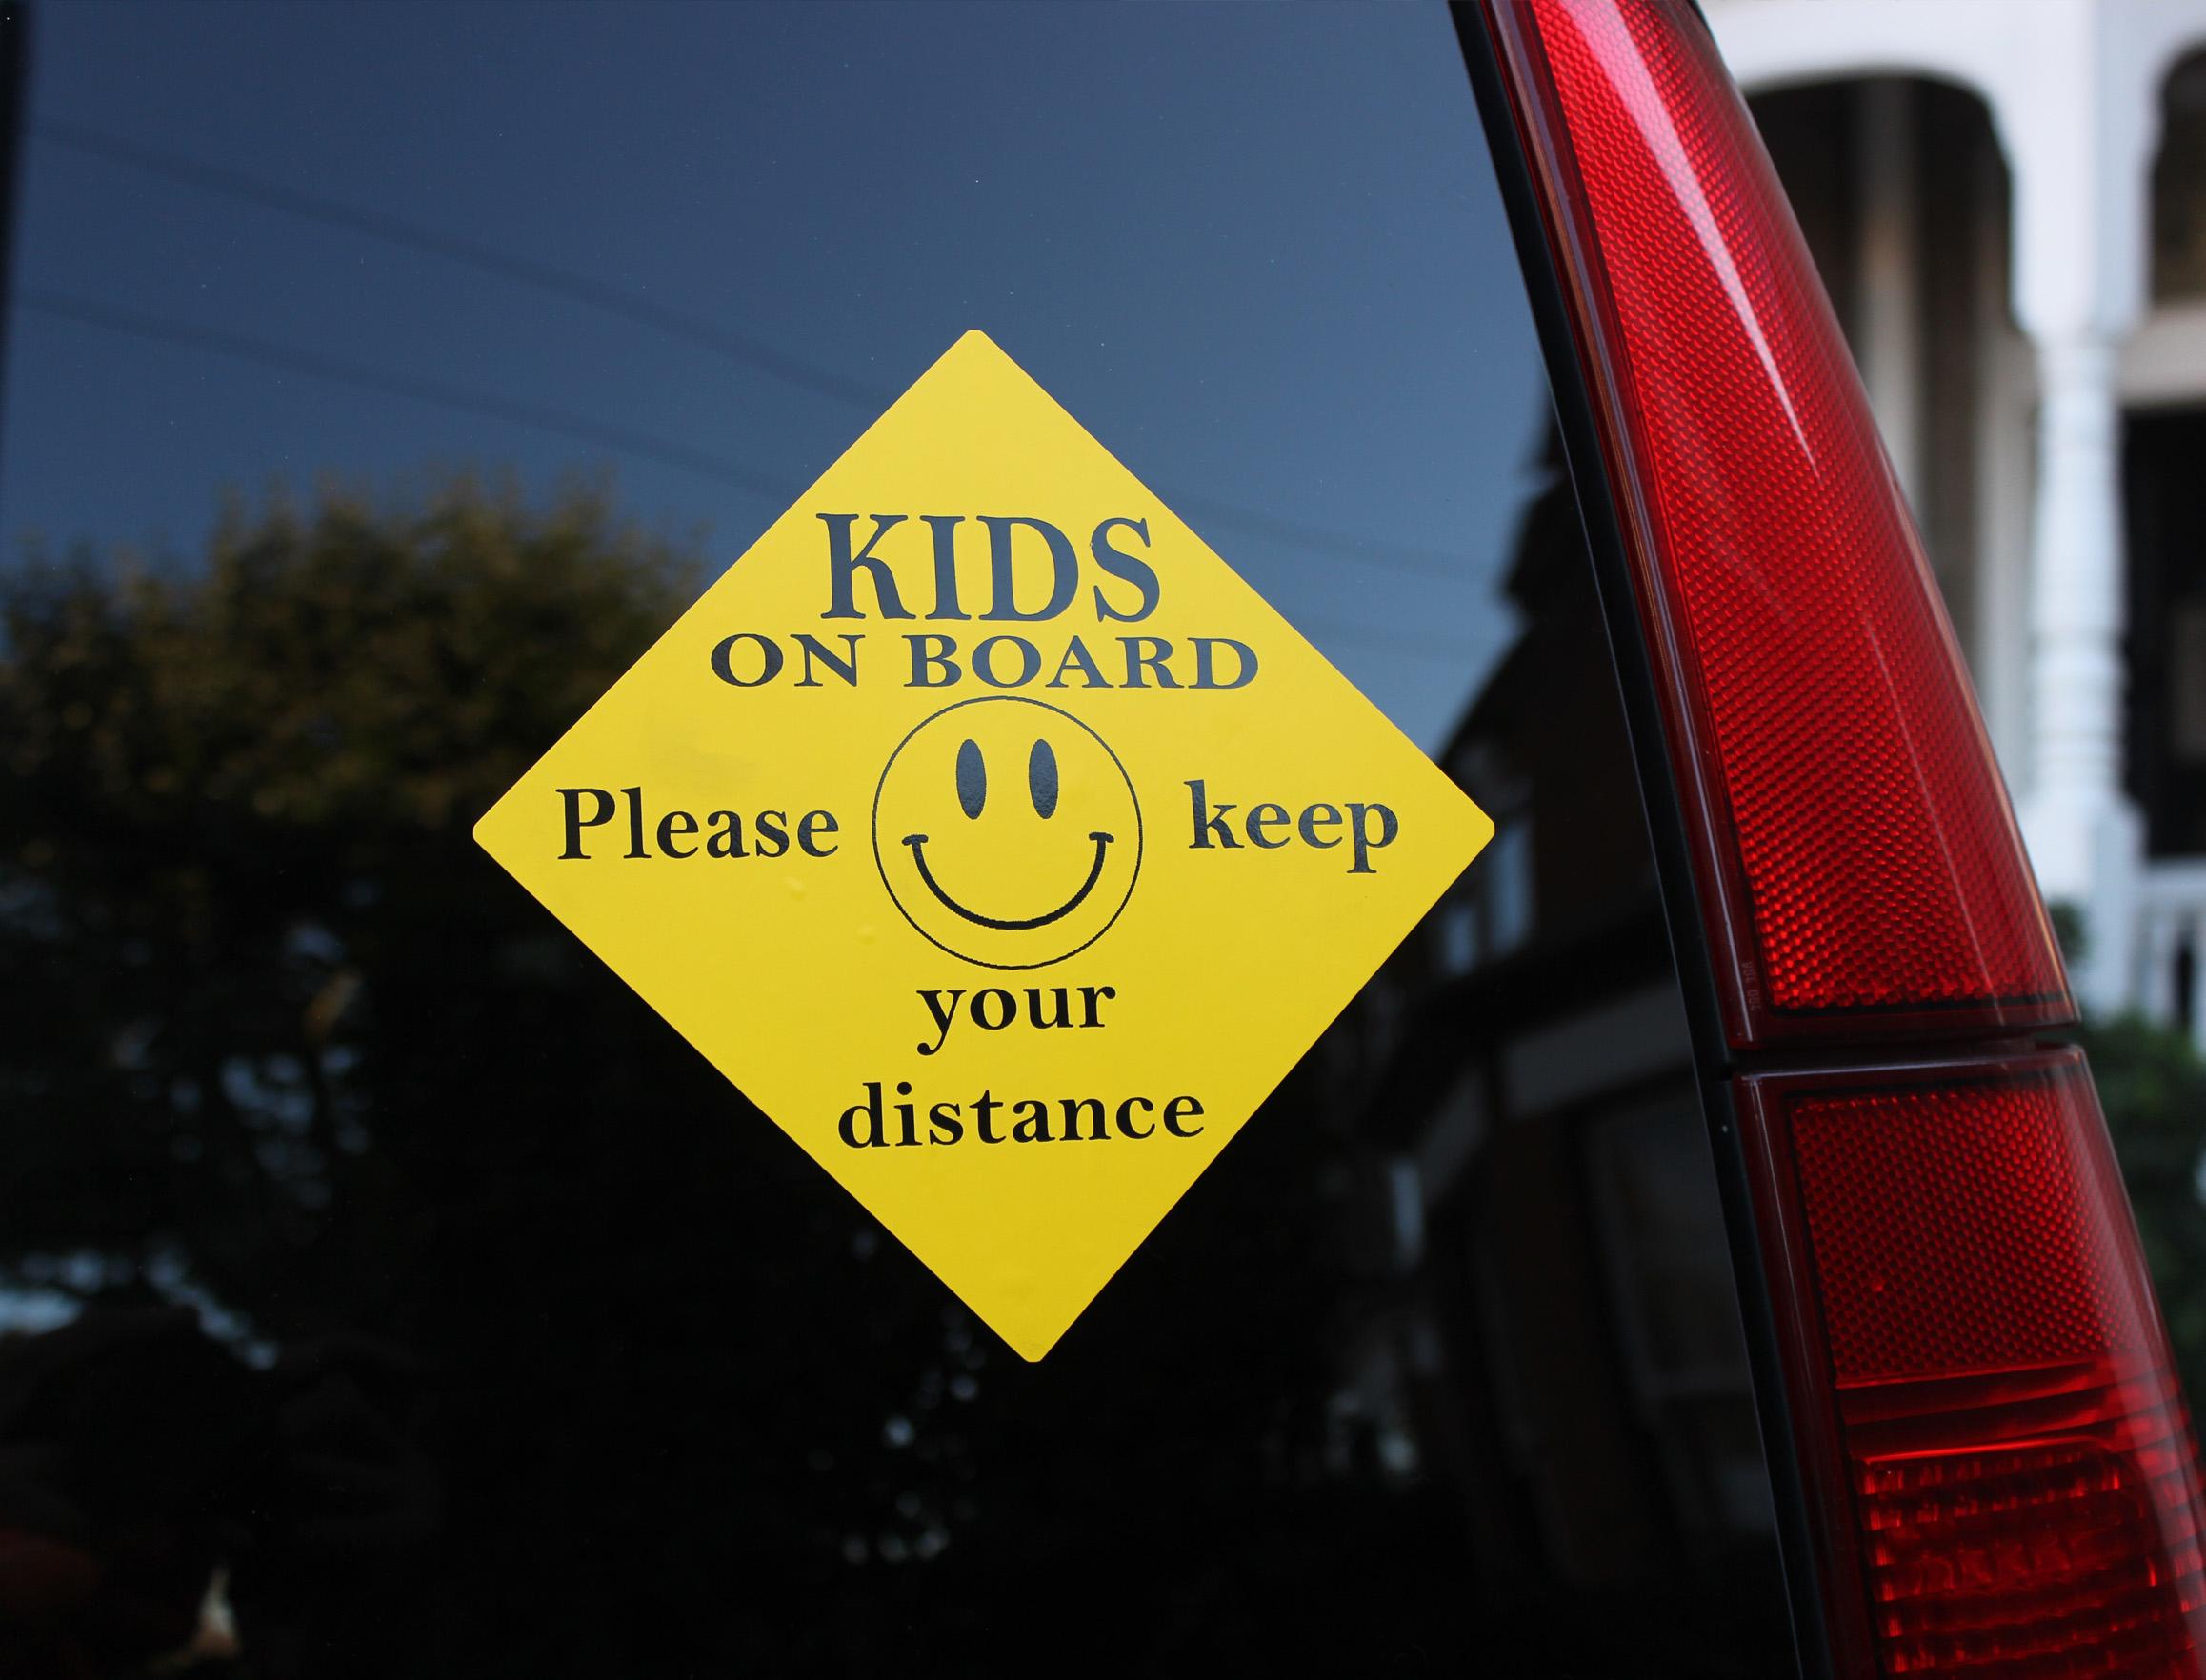 Kids on board sticker on car